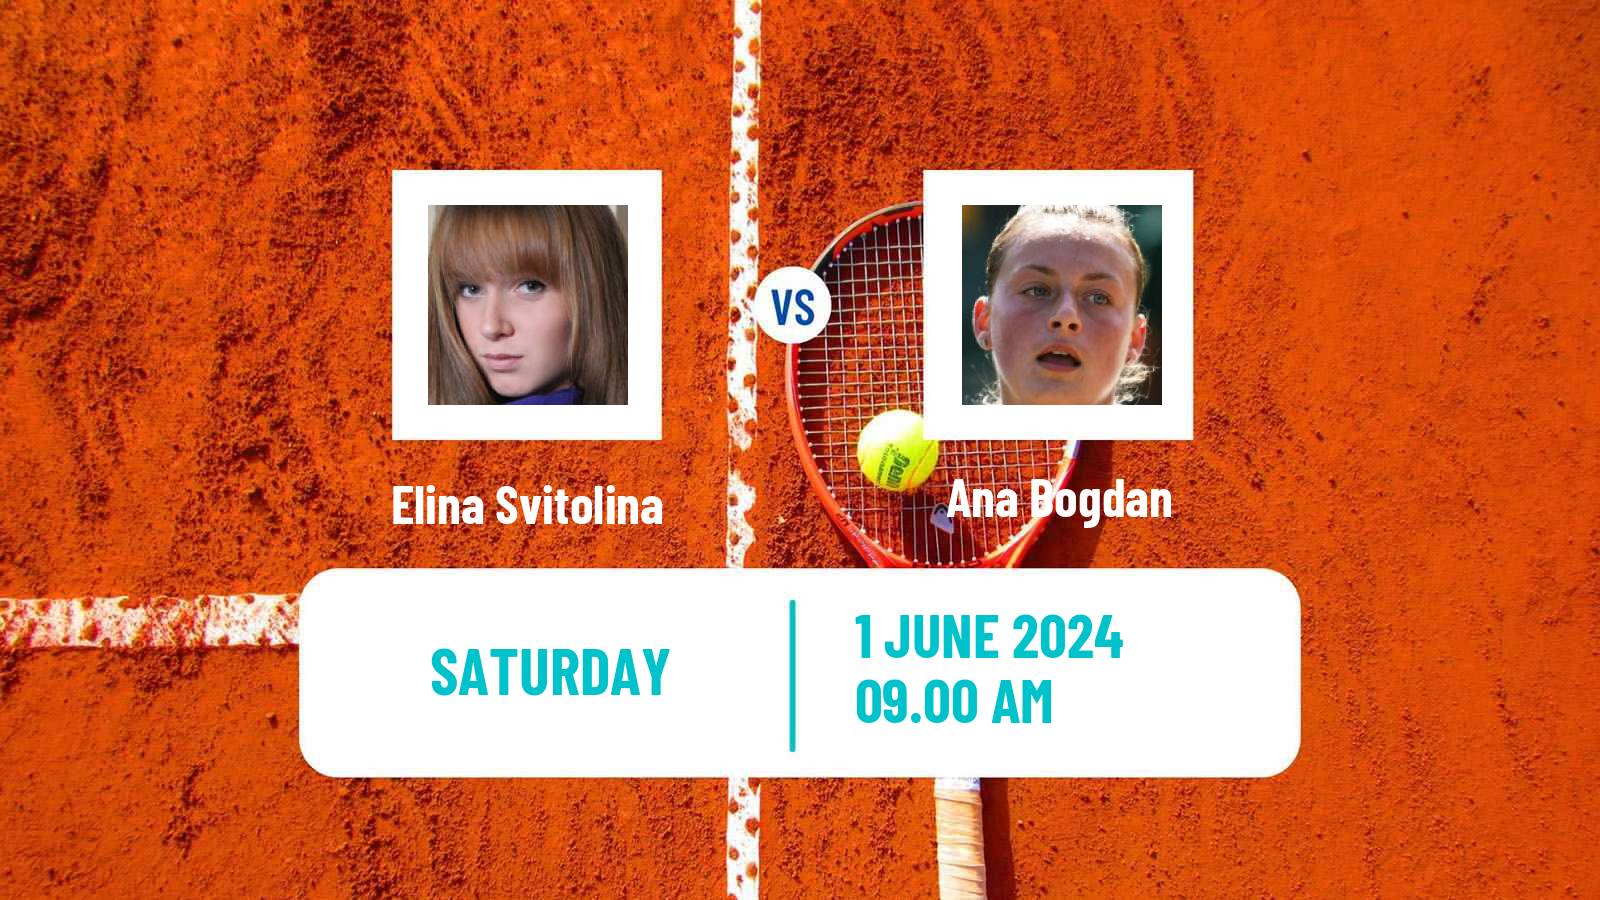 Tennis WTA Roland Garros Elina Svitolina - Ana Bogdan